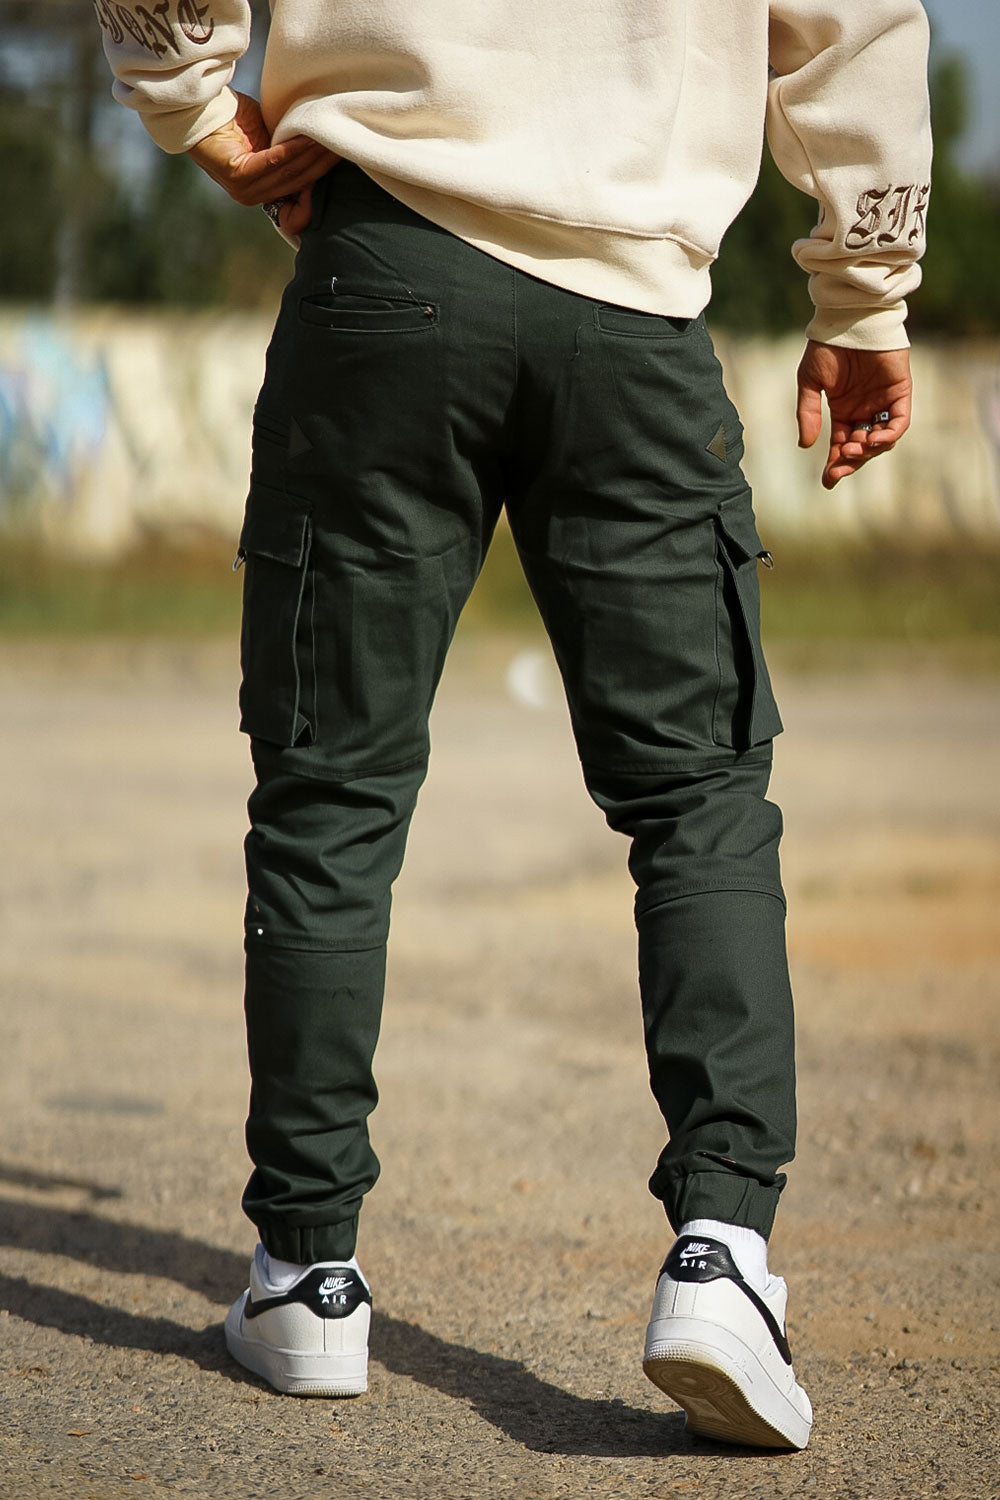 men's green cargo pants